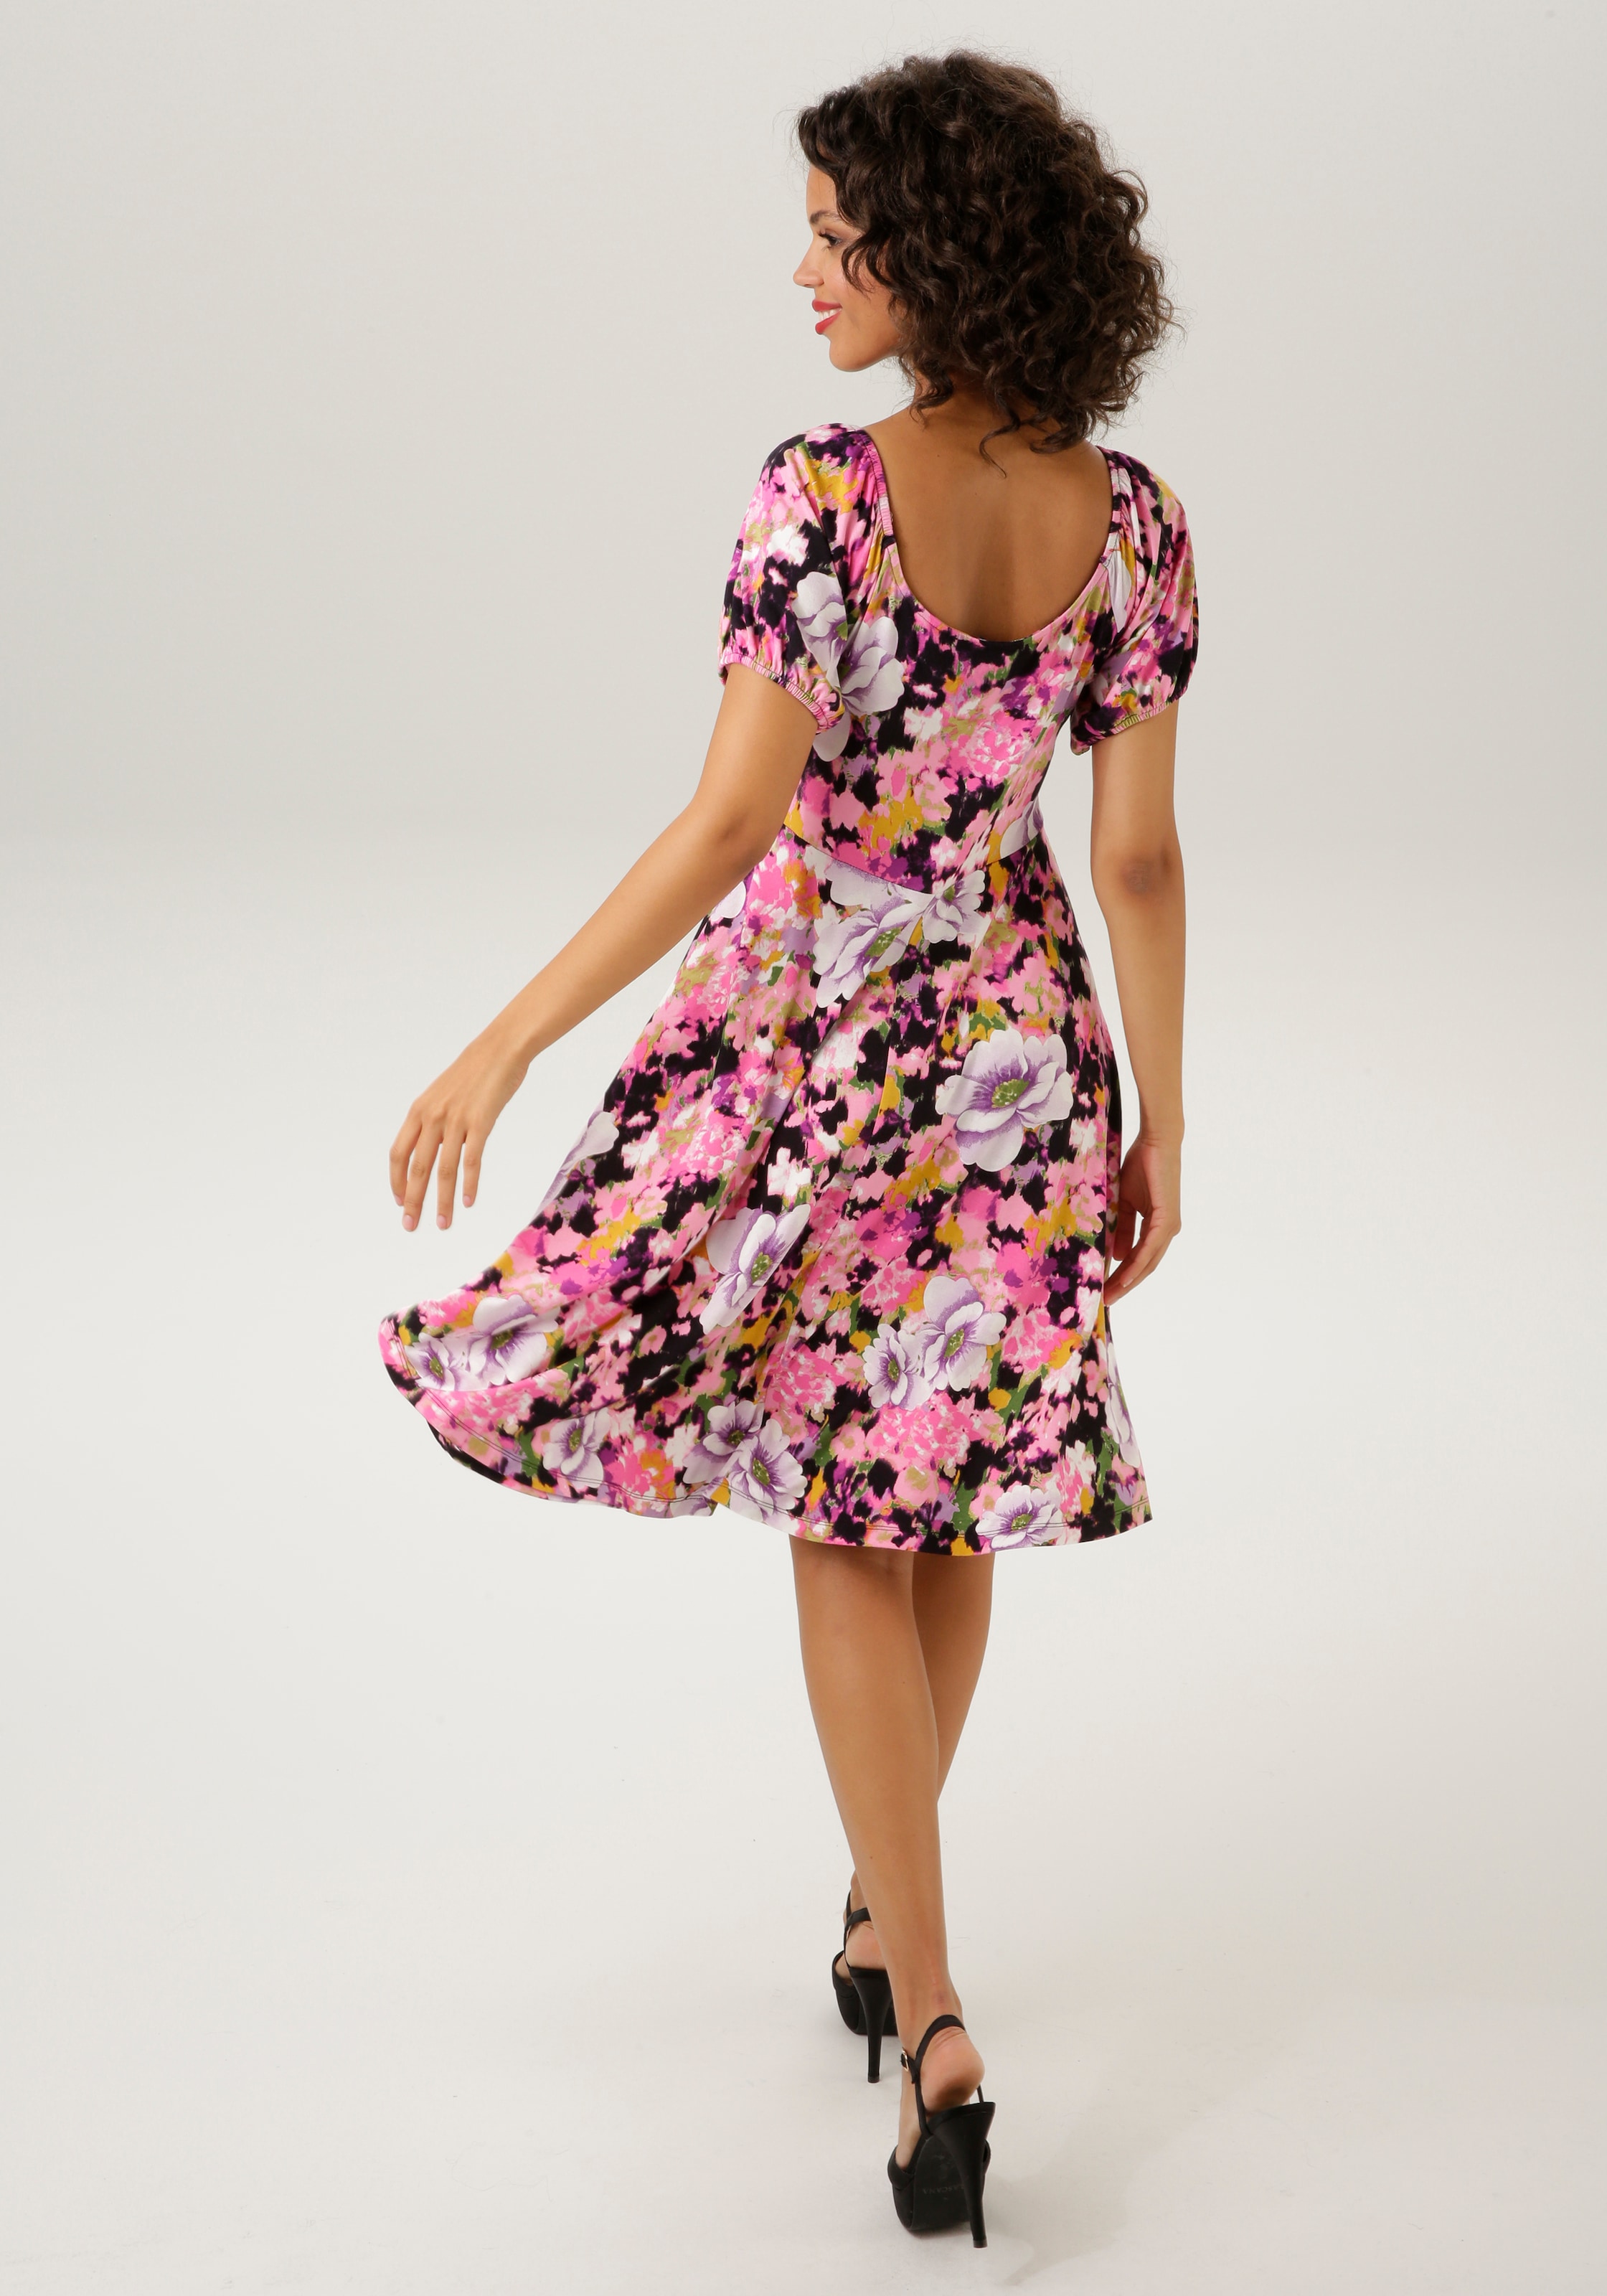 Shop KOLLEKTION CASUAL - Unikat mit Blumendruck Teil farbenfrohem ein - Online OTTO Sommerkleid, Aniston im jedes NEUE